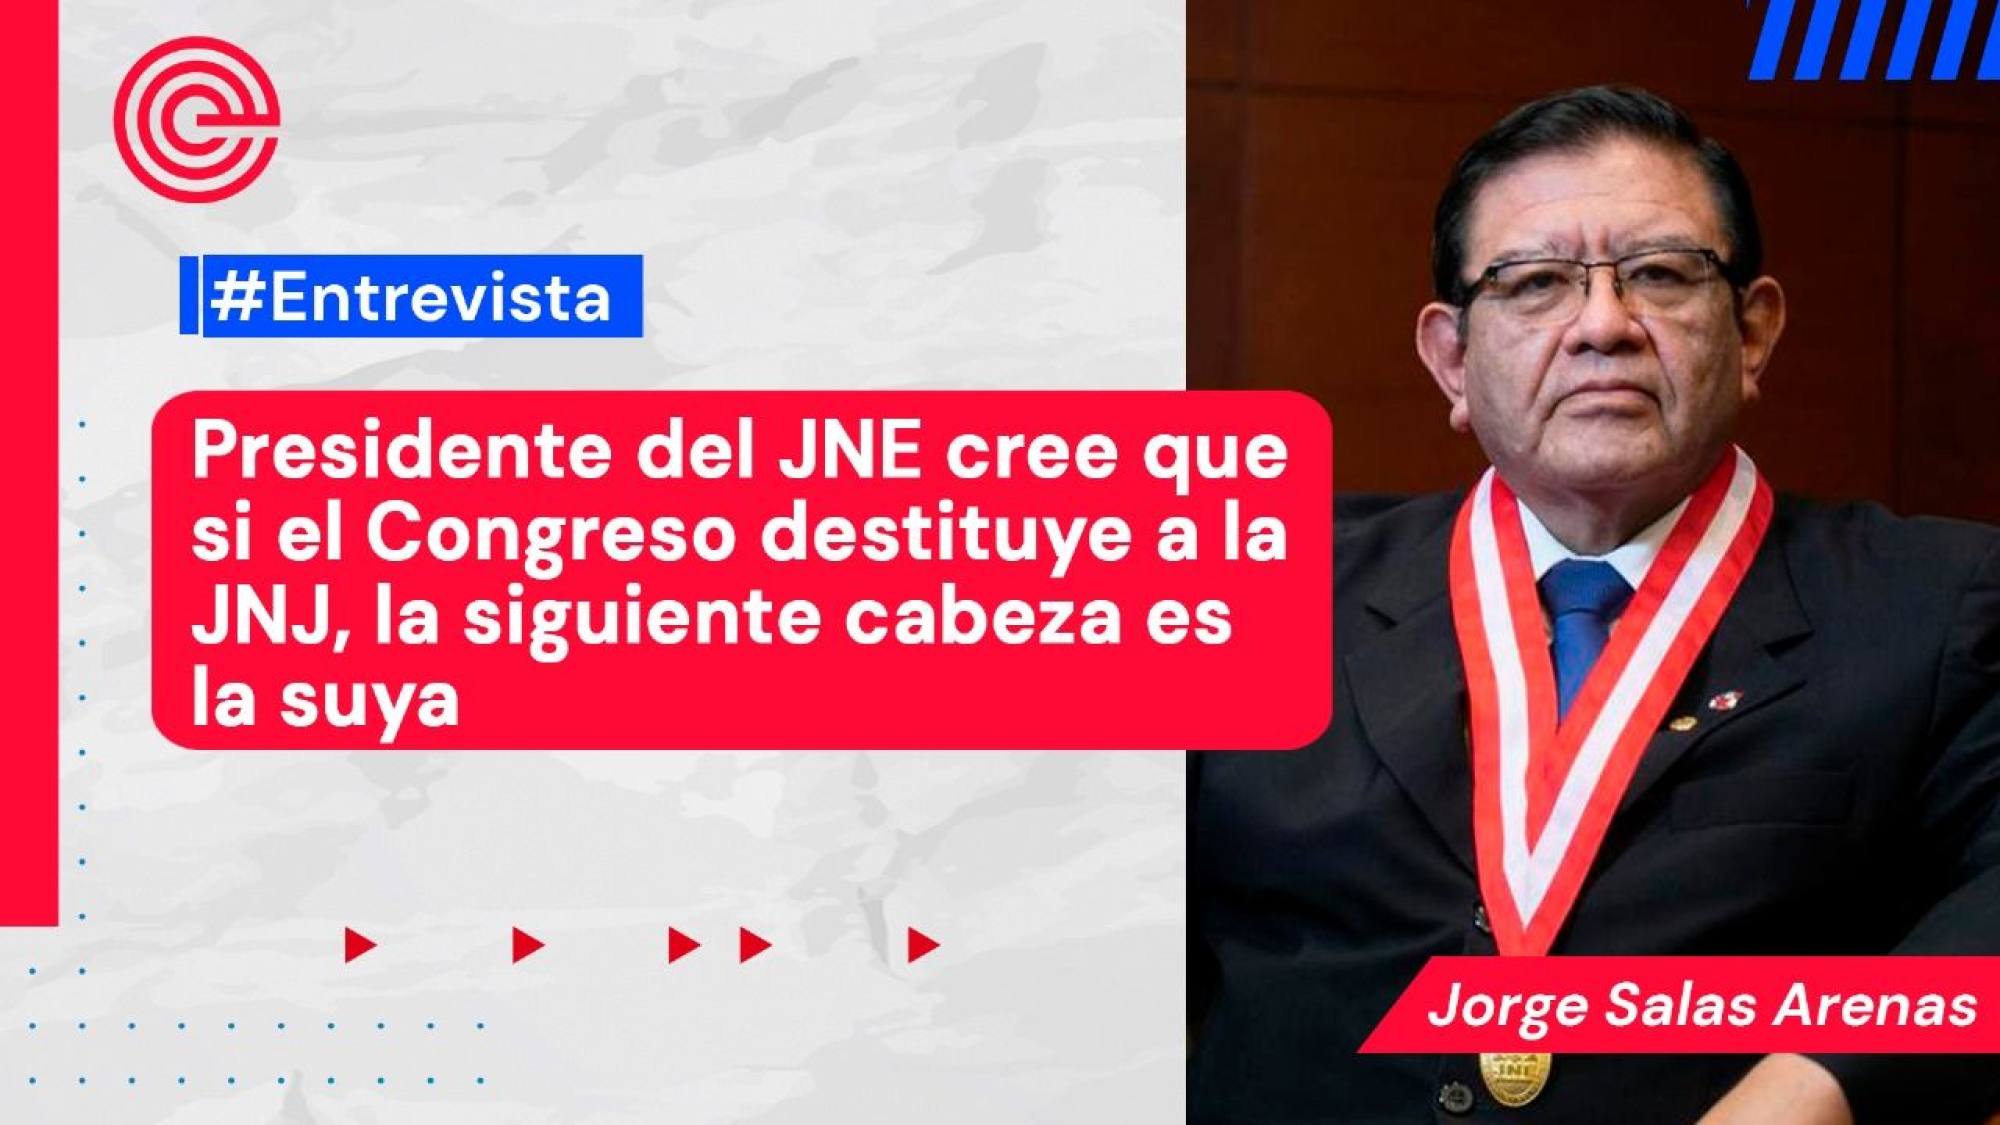 Jorge Salas Arenas, presidente del JNE, habla en una semana decisiva, Epicentro TV